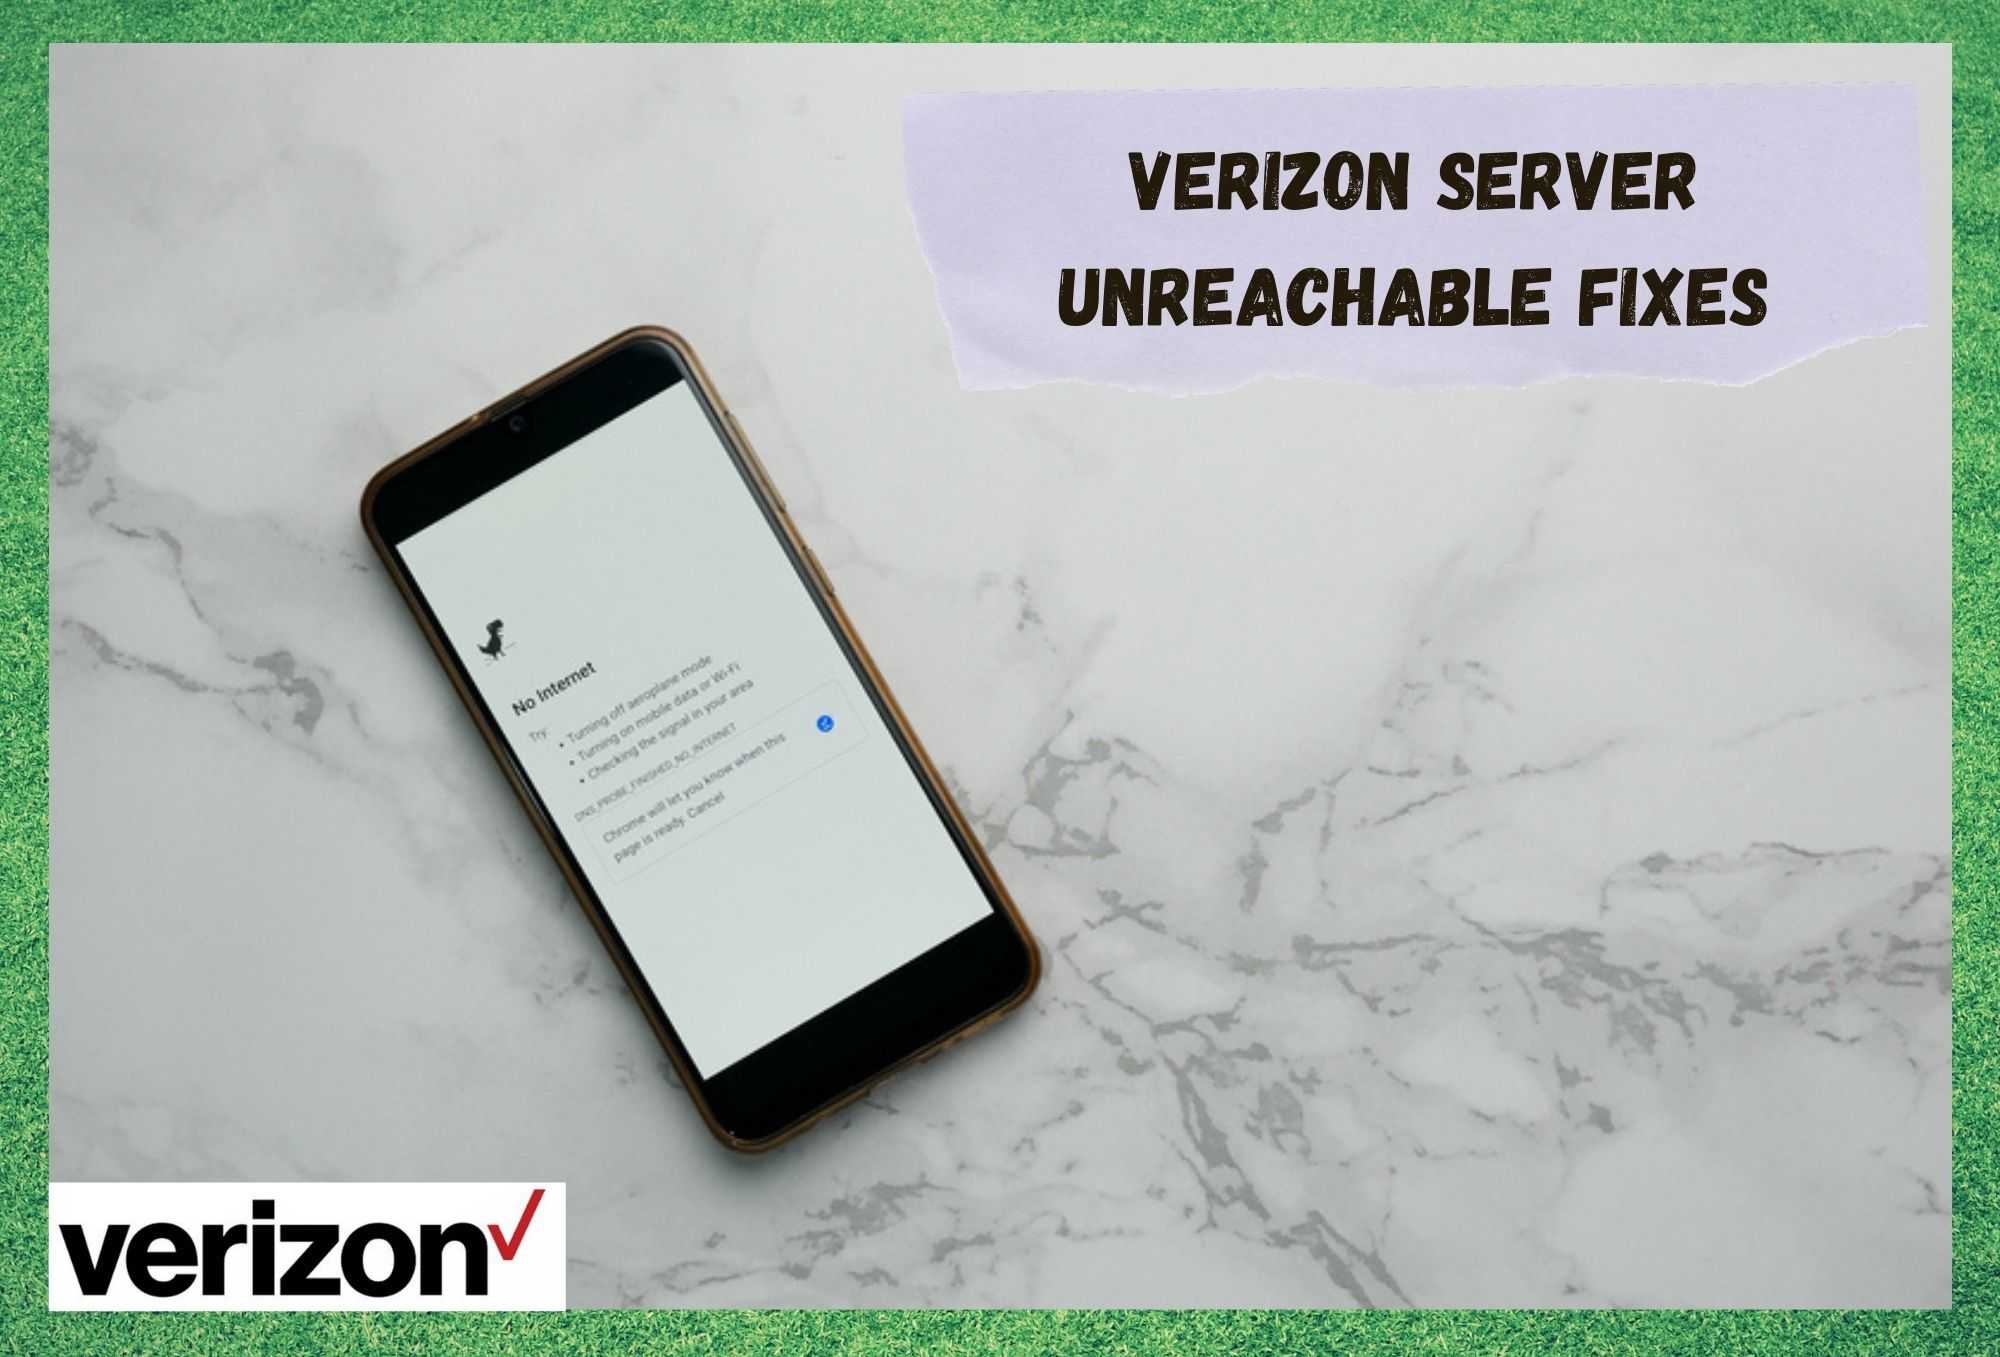 verizon server unreachable